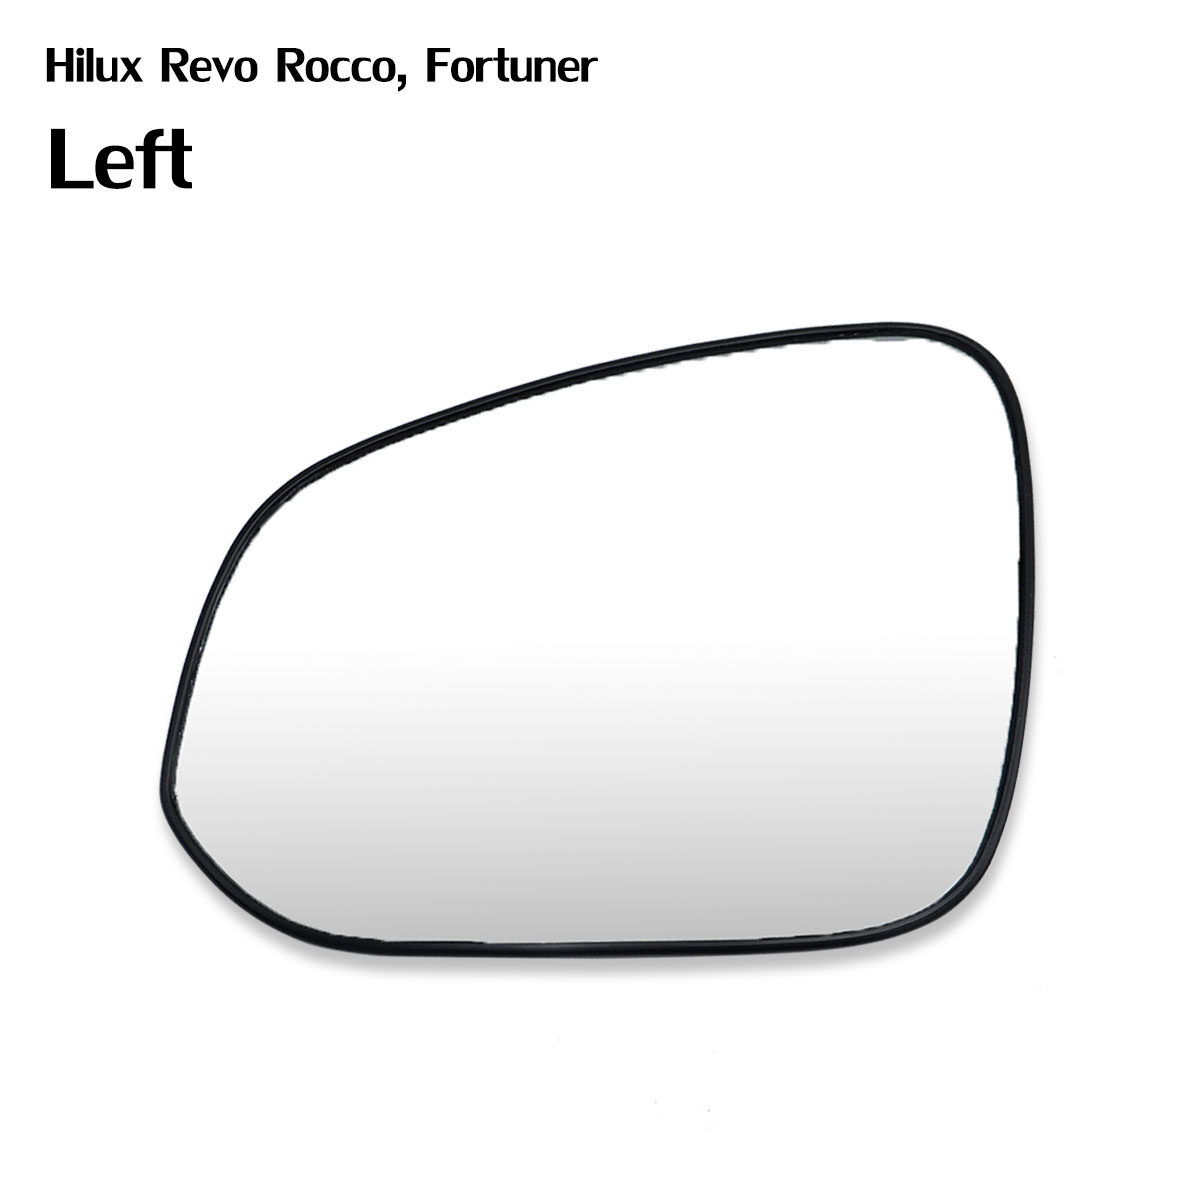 เนื้อเลนส์กระจก ข้าง  ซ้าย ใส่ Toyota Hilux REVO SR5 Fortuner 2015 - 2019 LH  Wing Side Door Mirror Glass Len Hilux Vigo Rocco SR5, Fortuner 4x2 4x4 2015-2019 Toyota มีบริการเก็บเงินปลายทาง